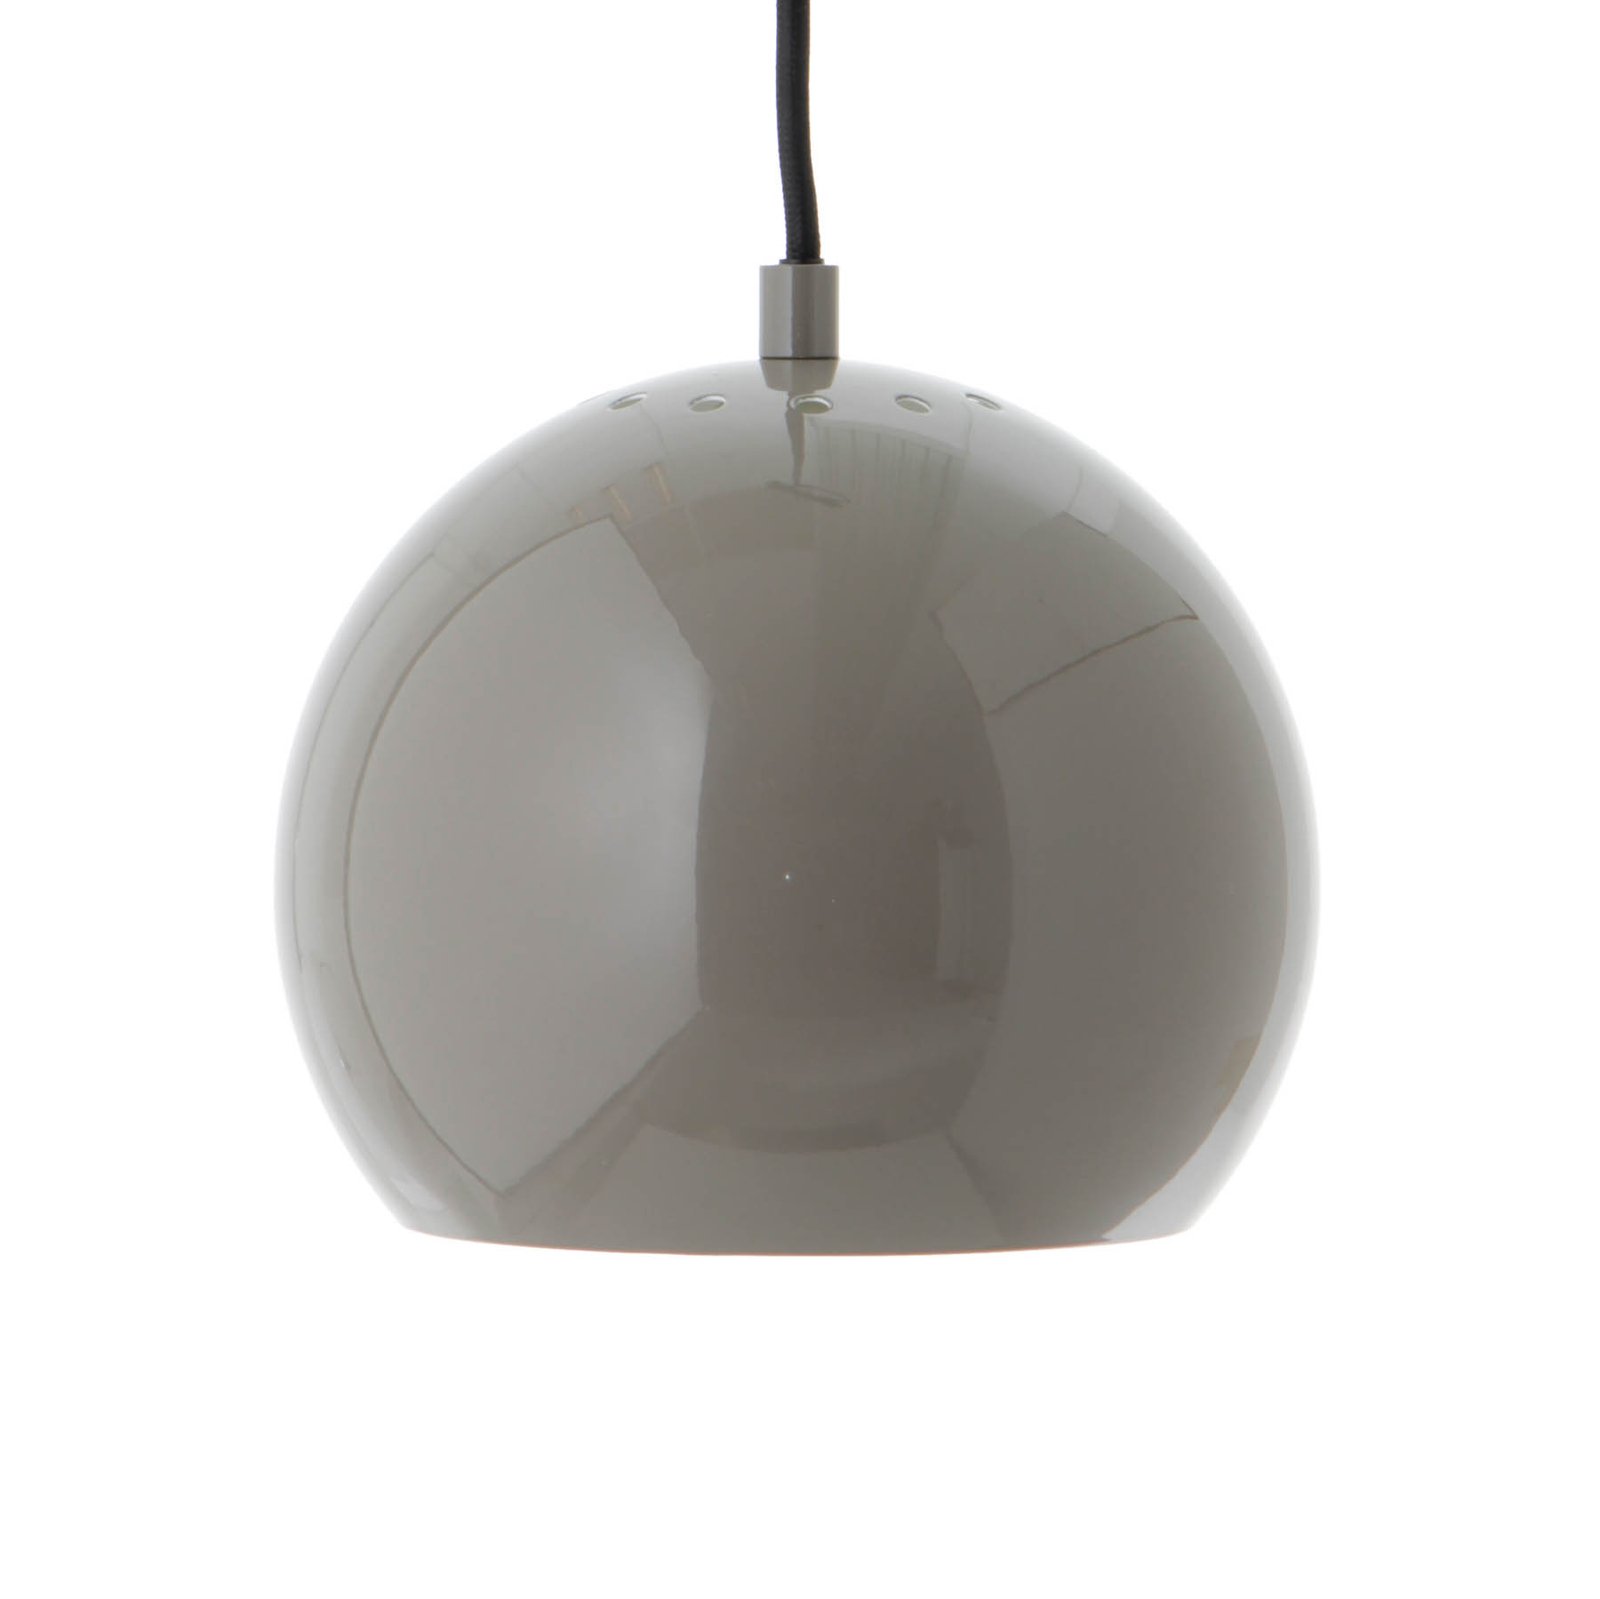 FRANDSEN pendellampa Ball, blank grå, Ø 18 cm